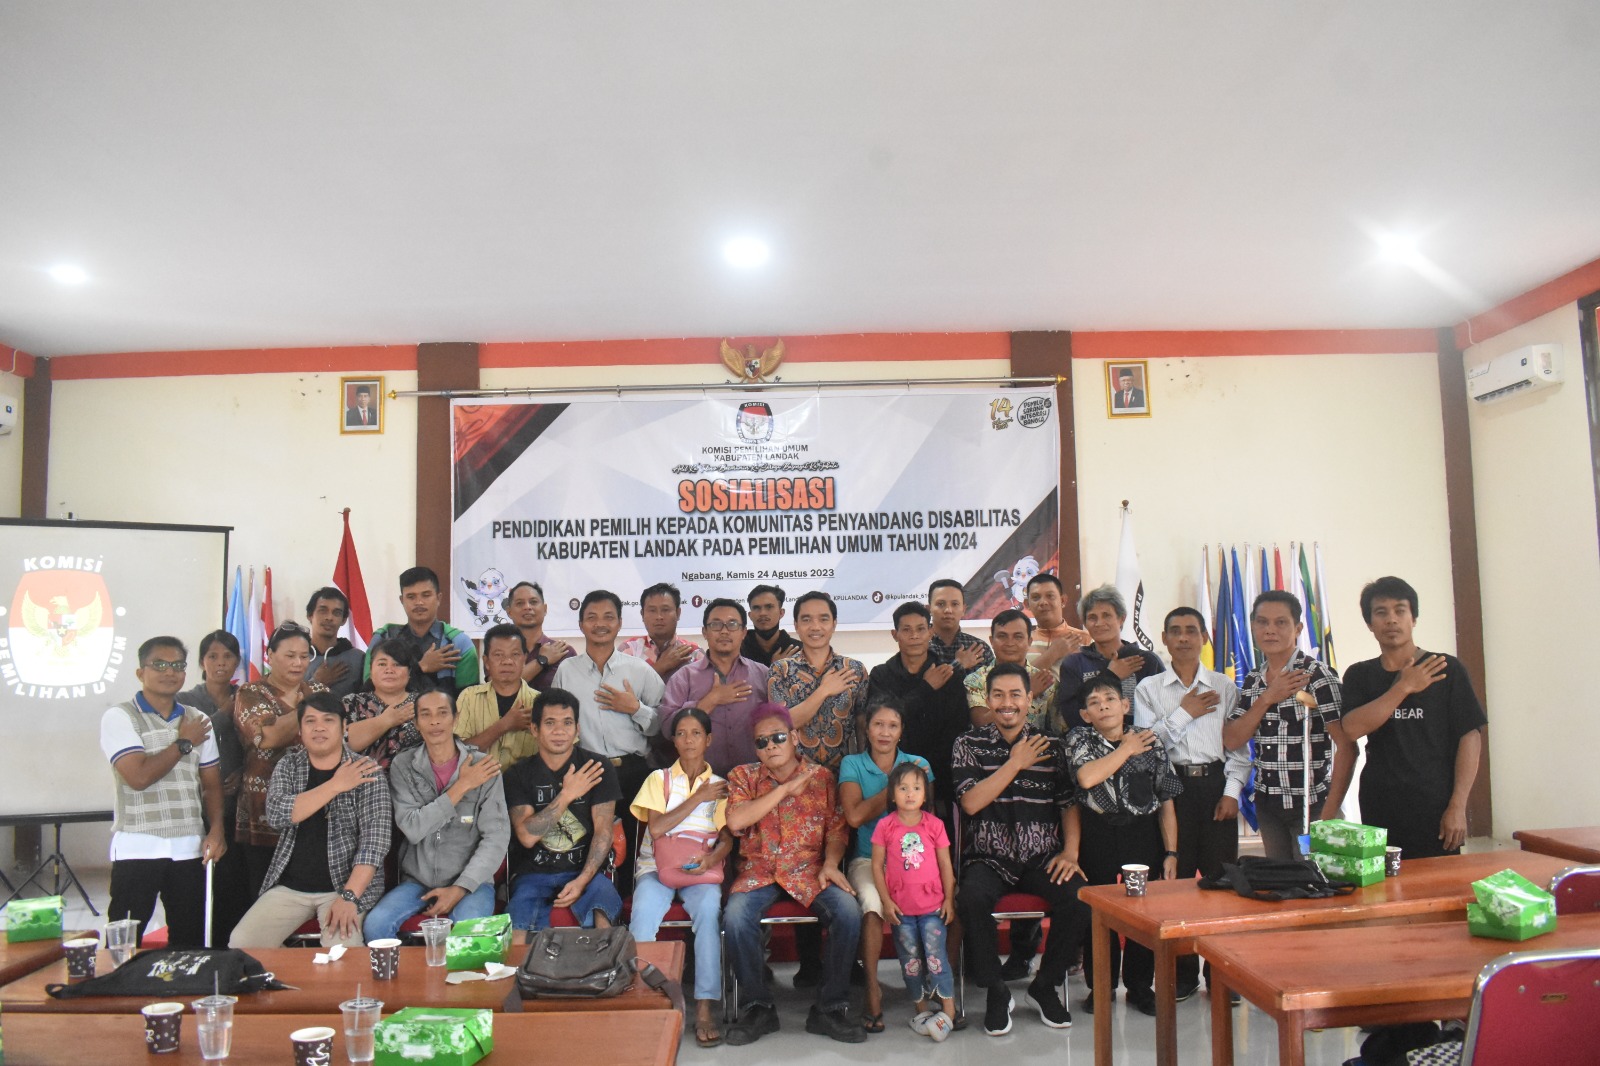 SOSIALISASI KEPADA PERSATUAN PENYANDANG DISABILITAS INDONESIA (PPDI)